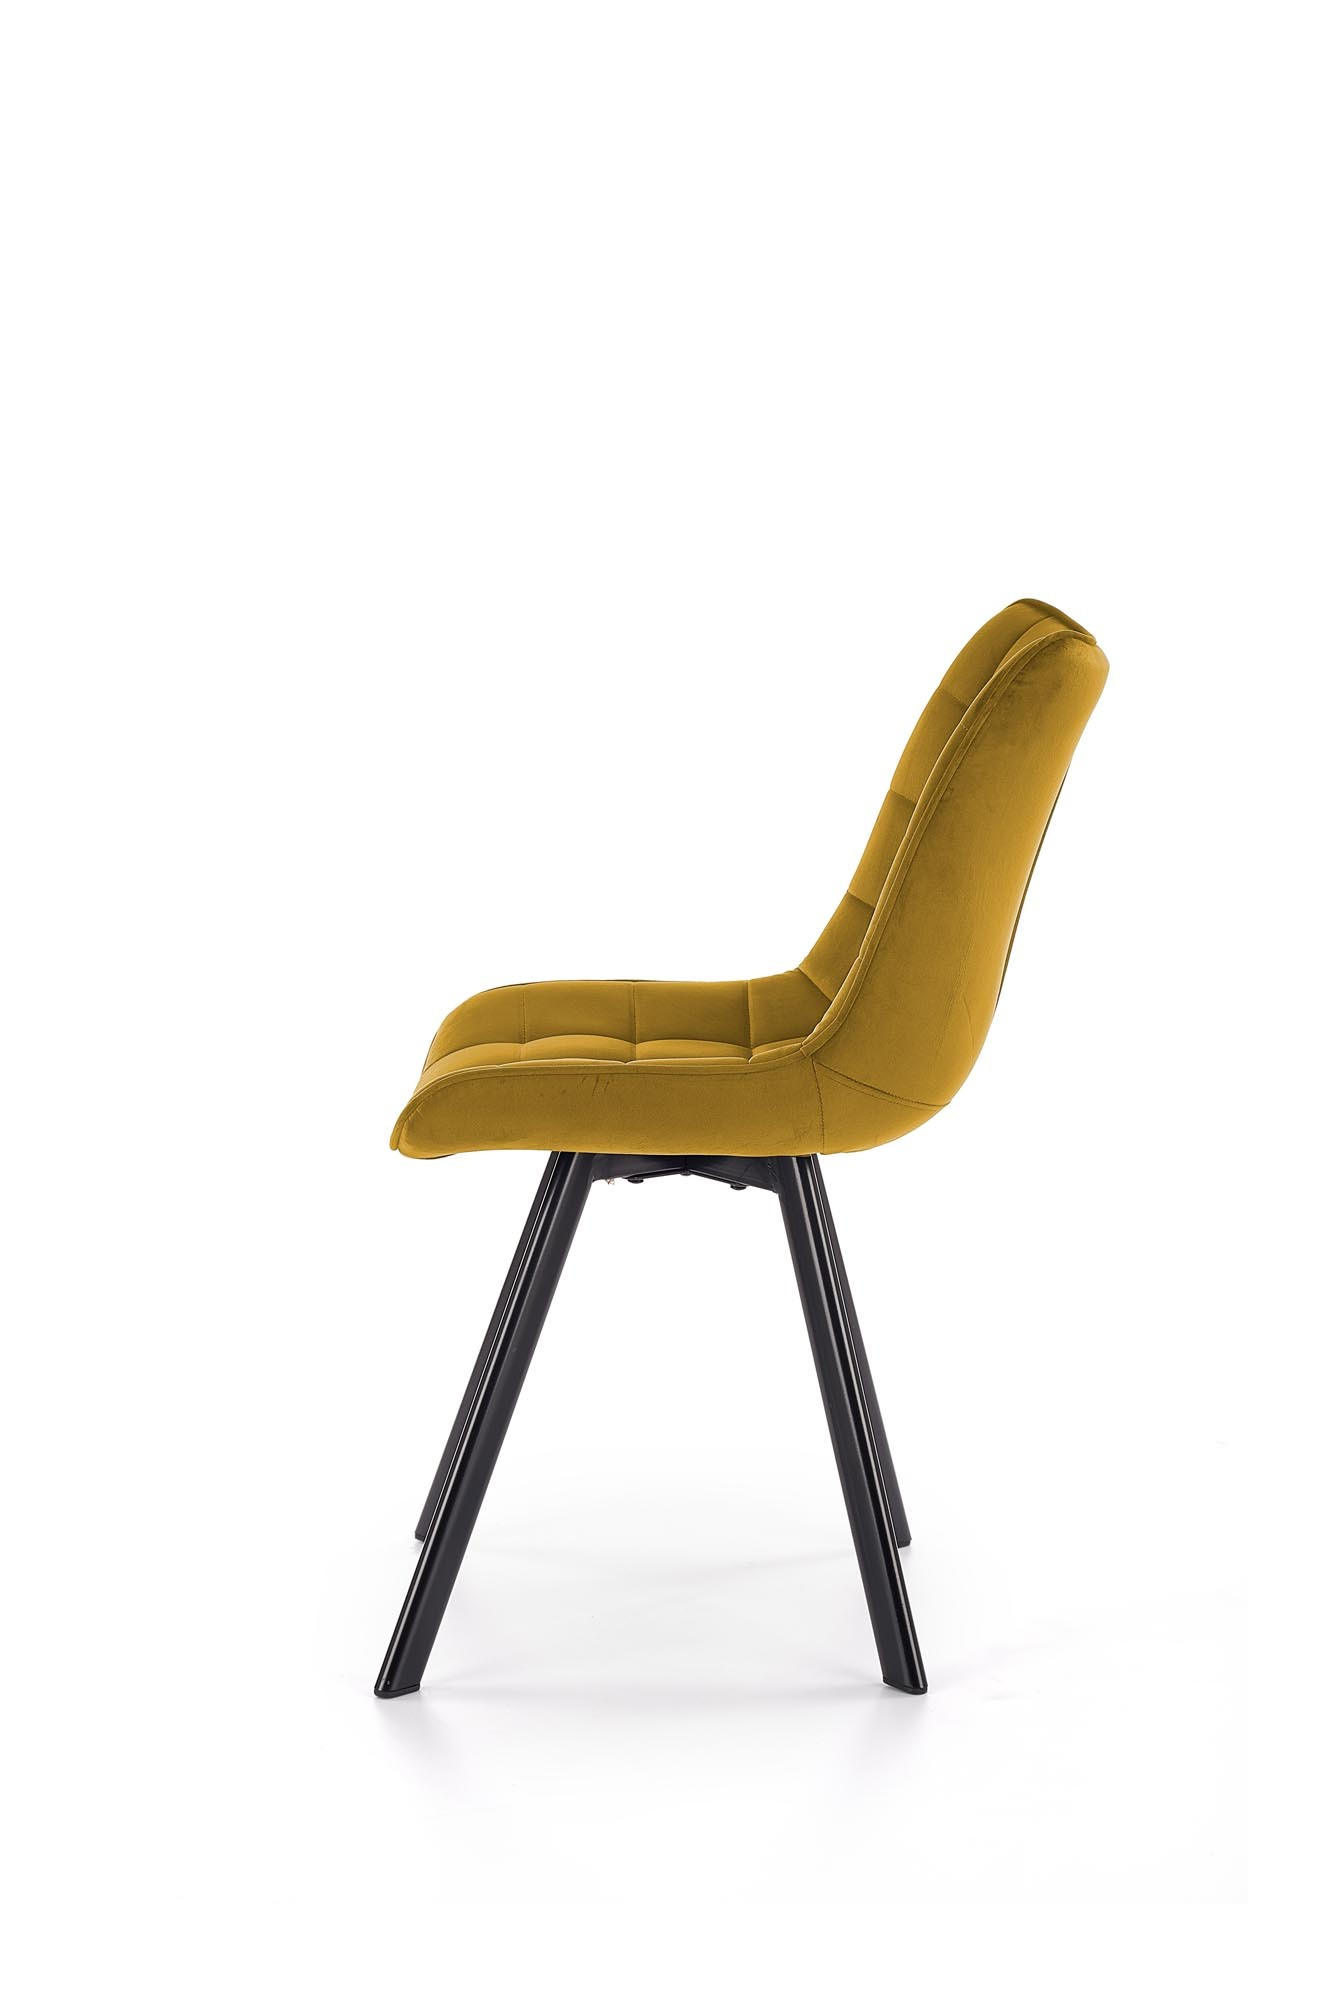 K332 krzesło nogi - czarne, siedzisko - musztardowy